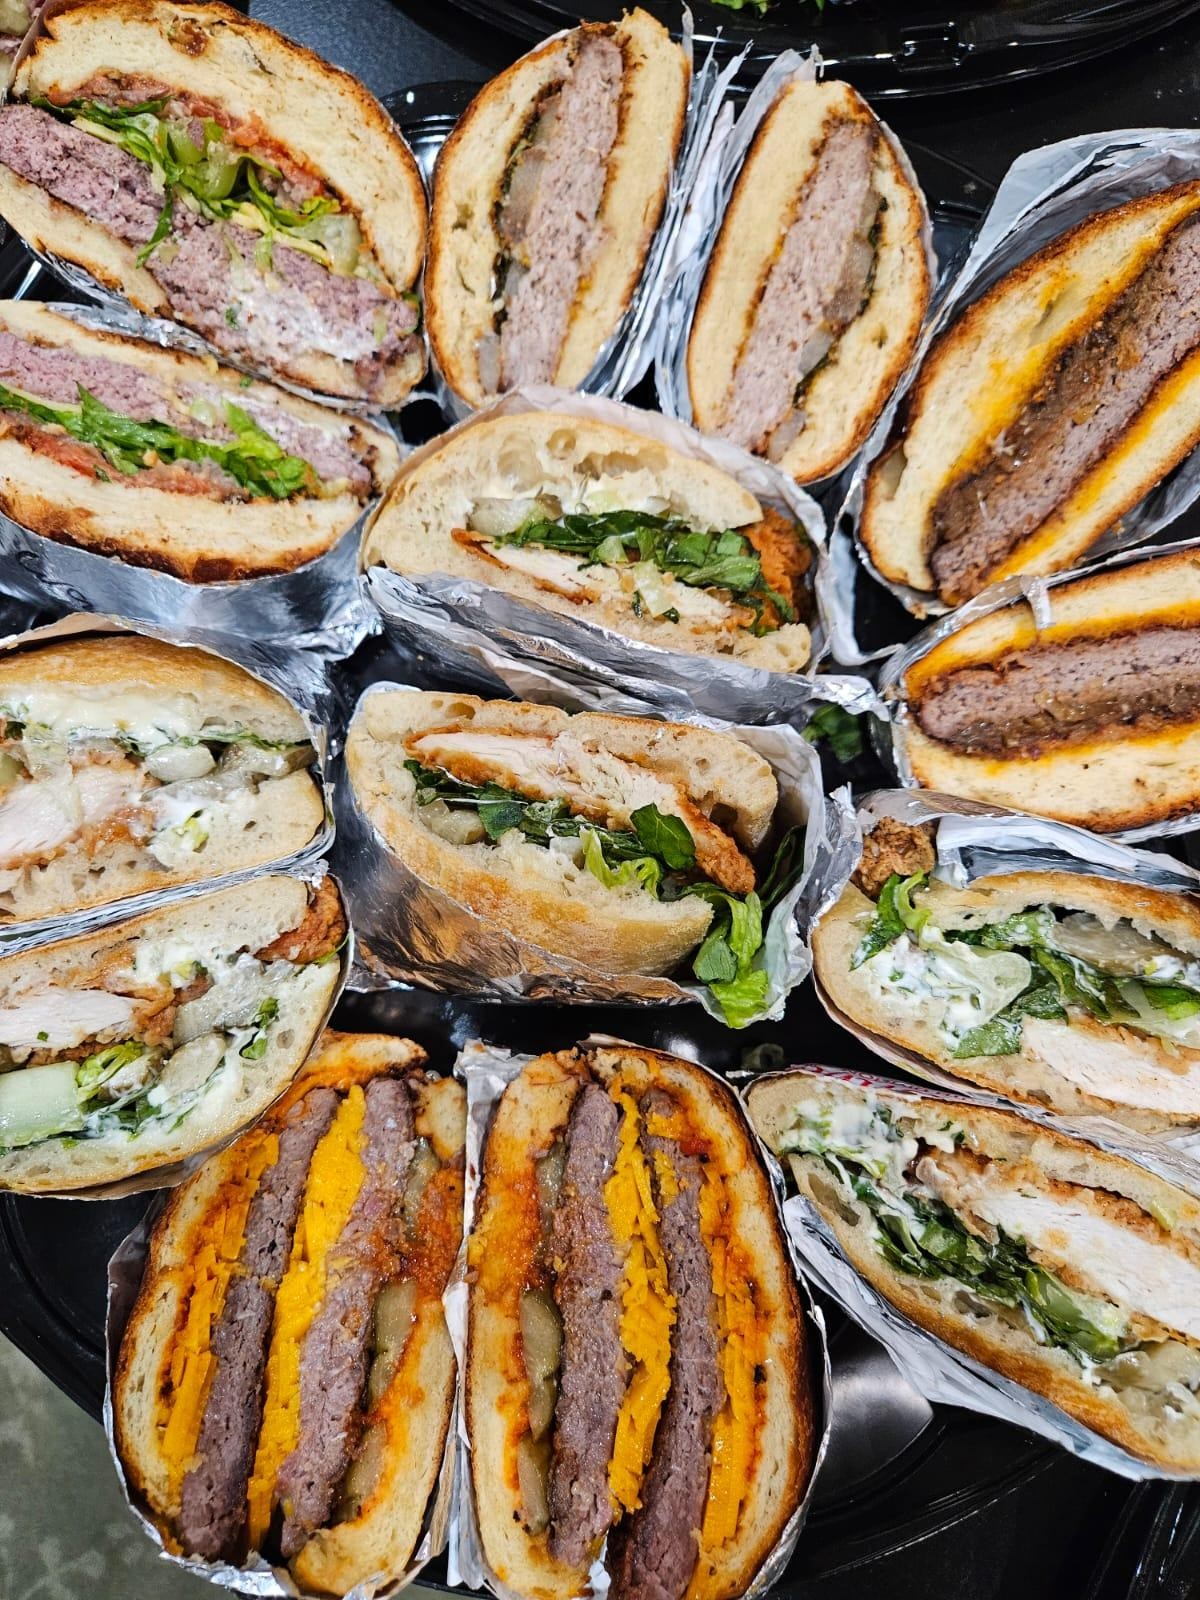 Hot Mixed Sandwich Platter